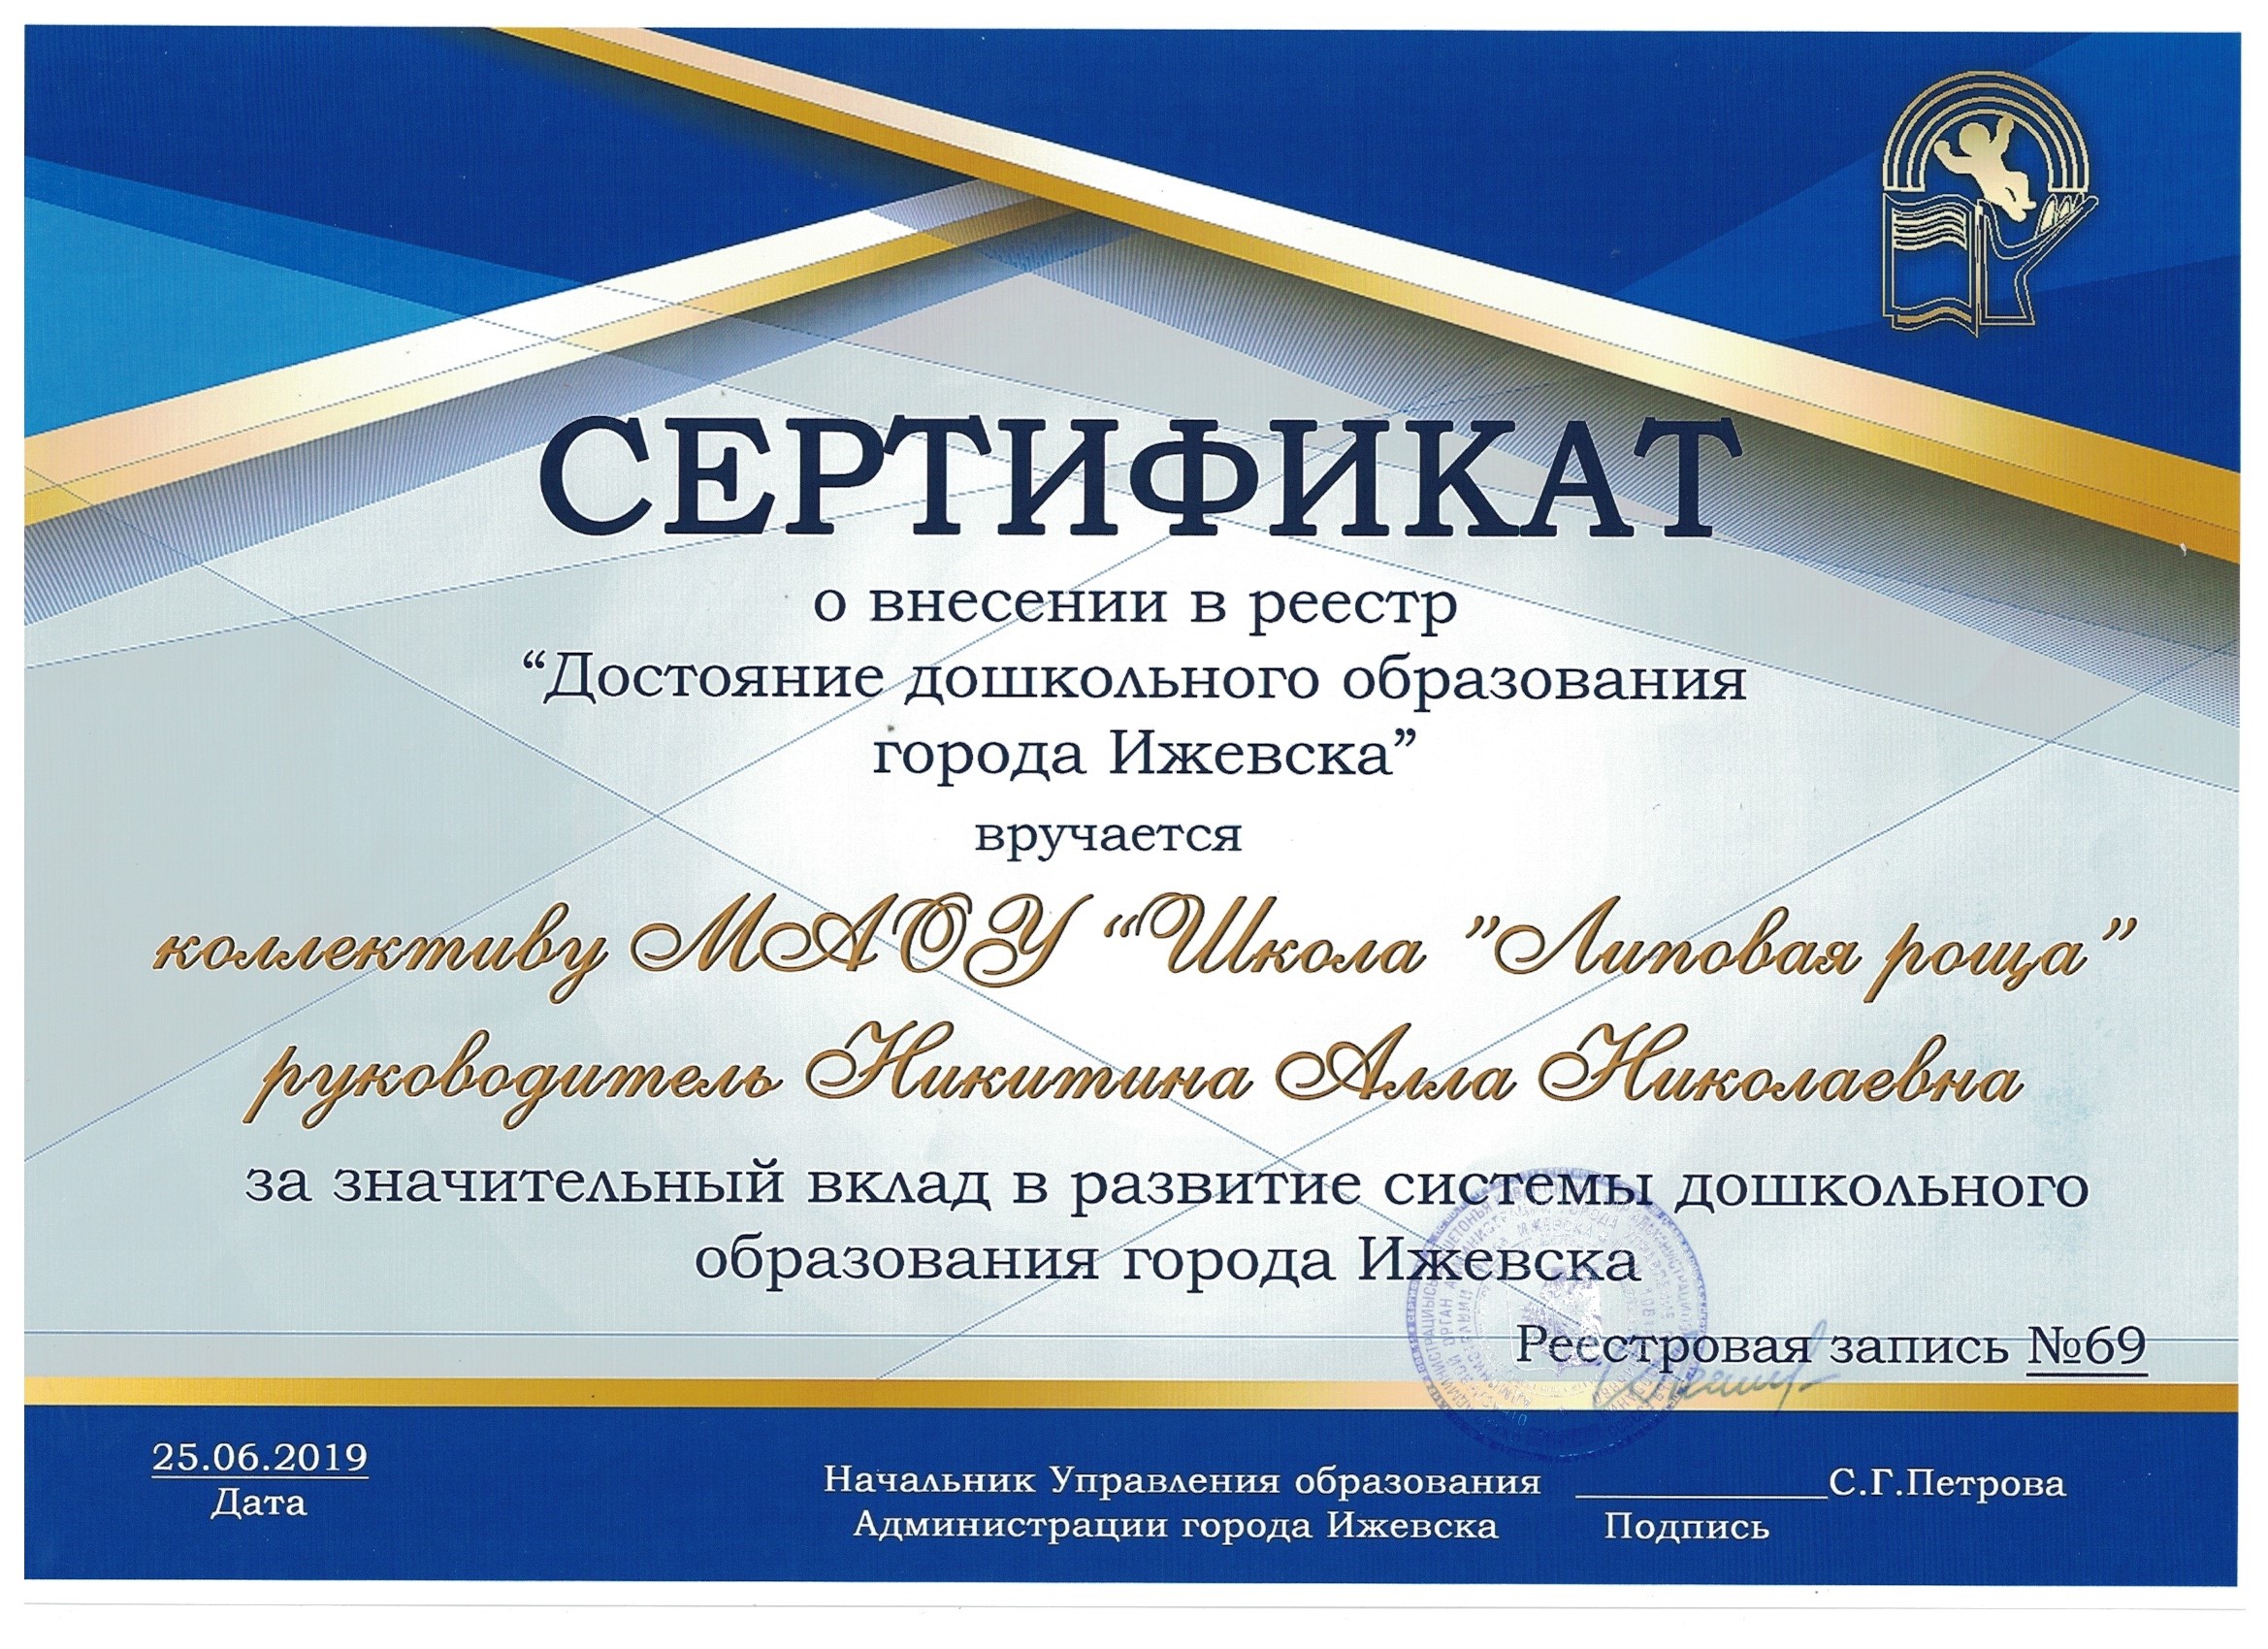 Сертификат о внесении в реестр «Достояние дошкольного образования города Ижевска»